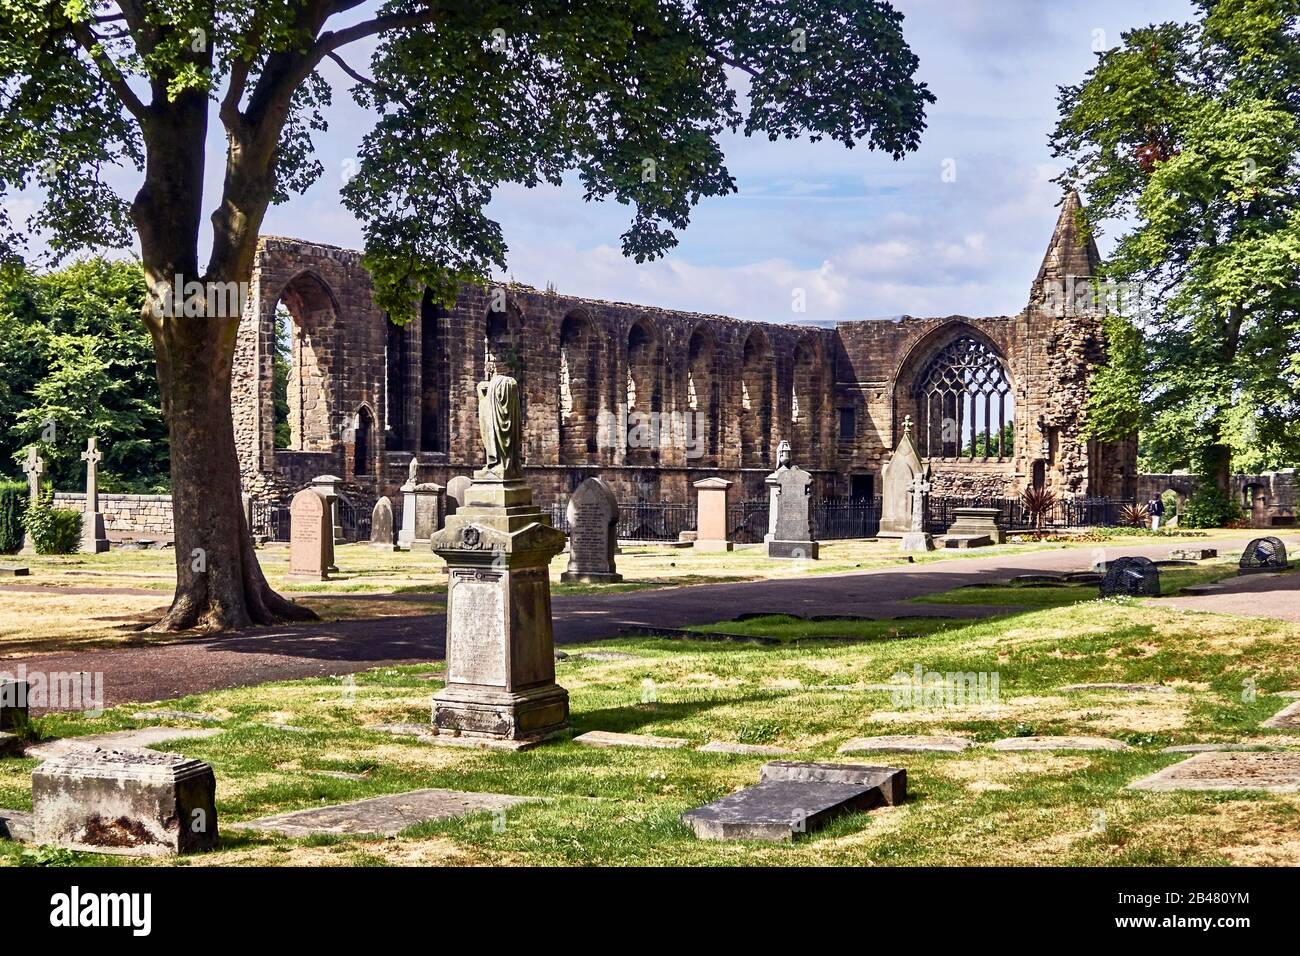 Das Kloster Dunfermline und die Ruinen des Königspalasts, eines der großen kulturellen und historischen Zentren Schottlands, das einst reichste und mächtigste Kloster Schottlands war, wurde der Königspalast im 16. Jahrhundert erbaut, um bedeutende Gäste zu beherbergen Stockfoto